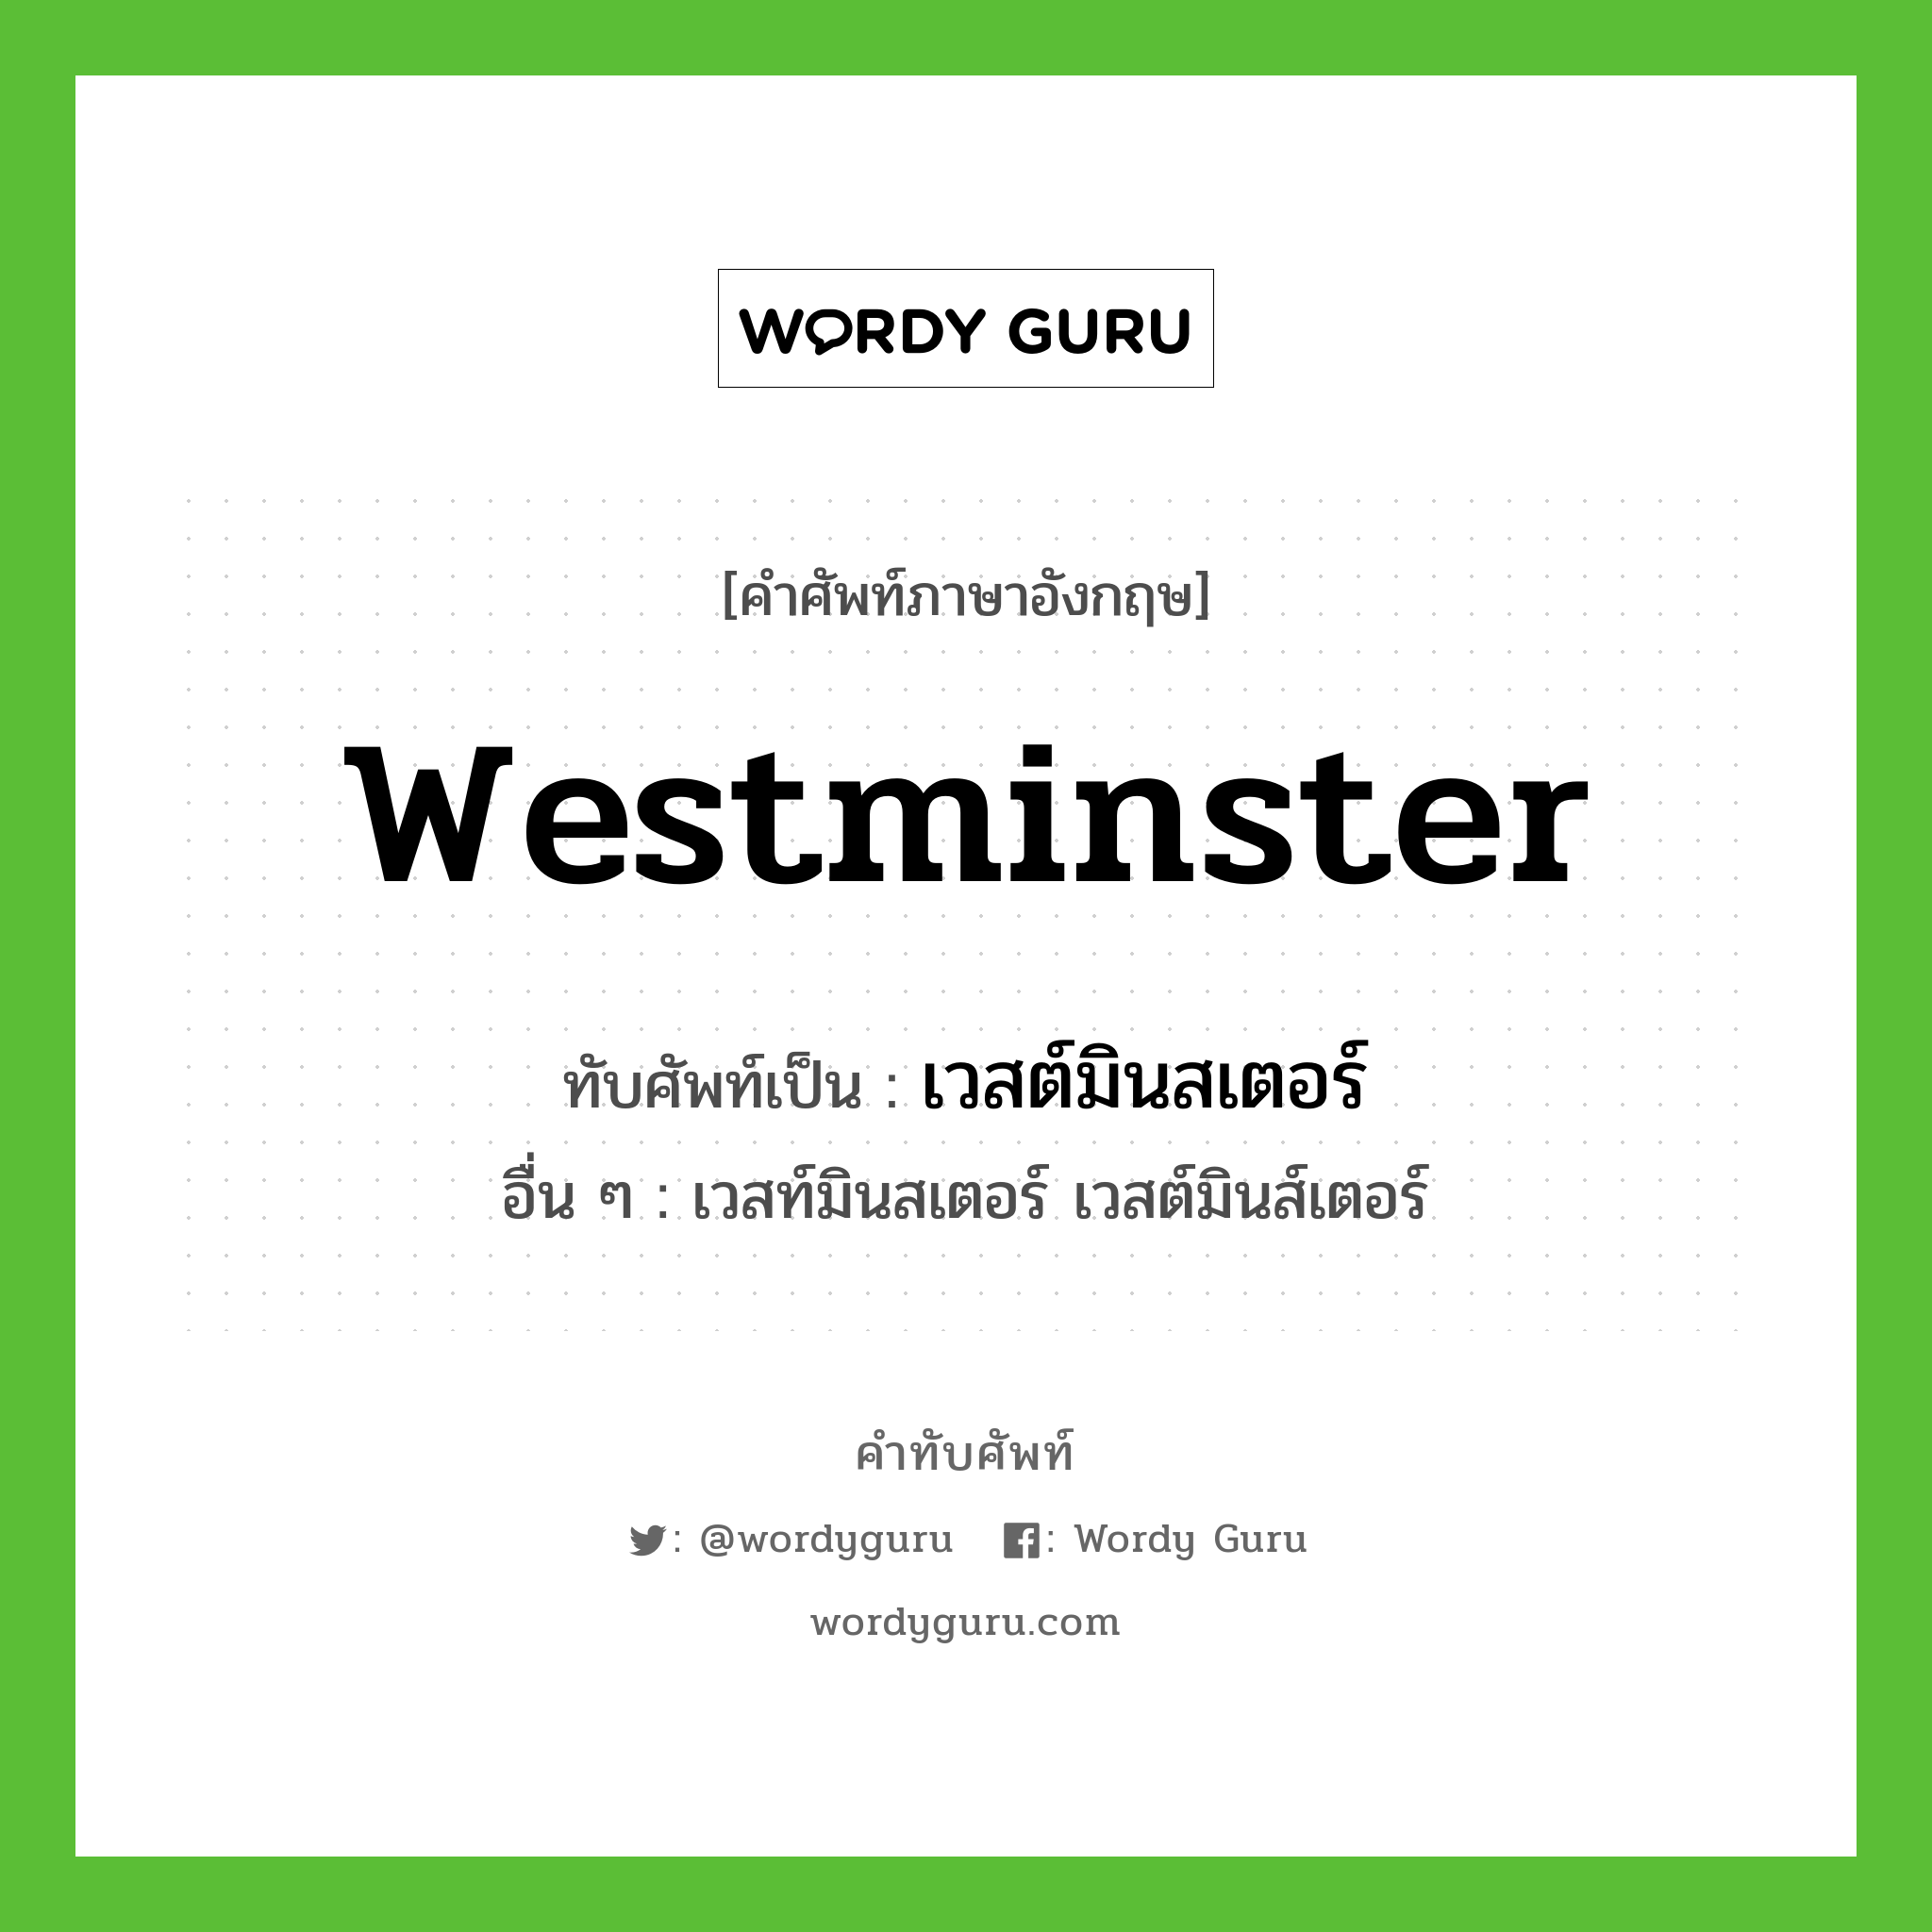 เวสต์มินสเตอร์ เขียนอย่างไร?, คำศัพท์ภาษาอังกฤษ เวสต์มินสเตอร์ ทับศัพท์เป็น Westminster อื่น ๆ เวสท์มินสเตอร์ เวสต์มินส์เตอร์